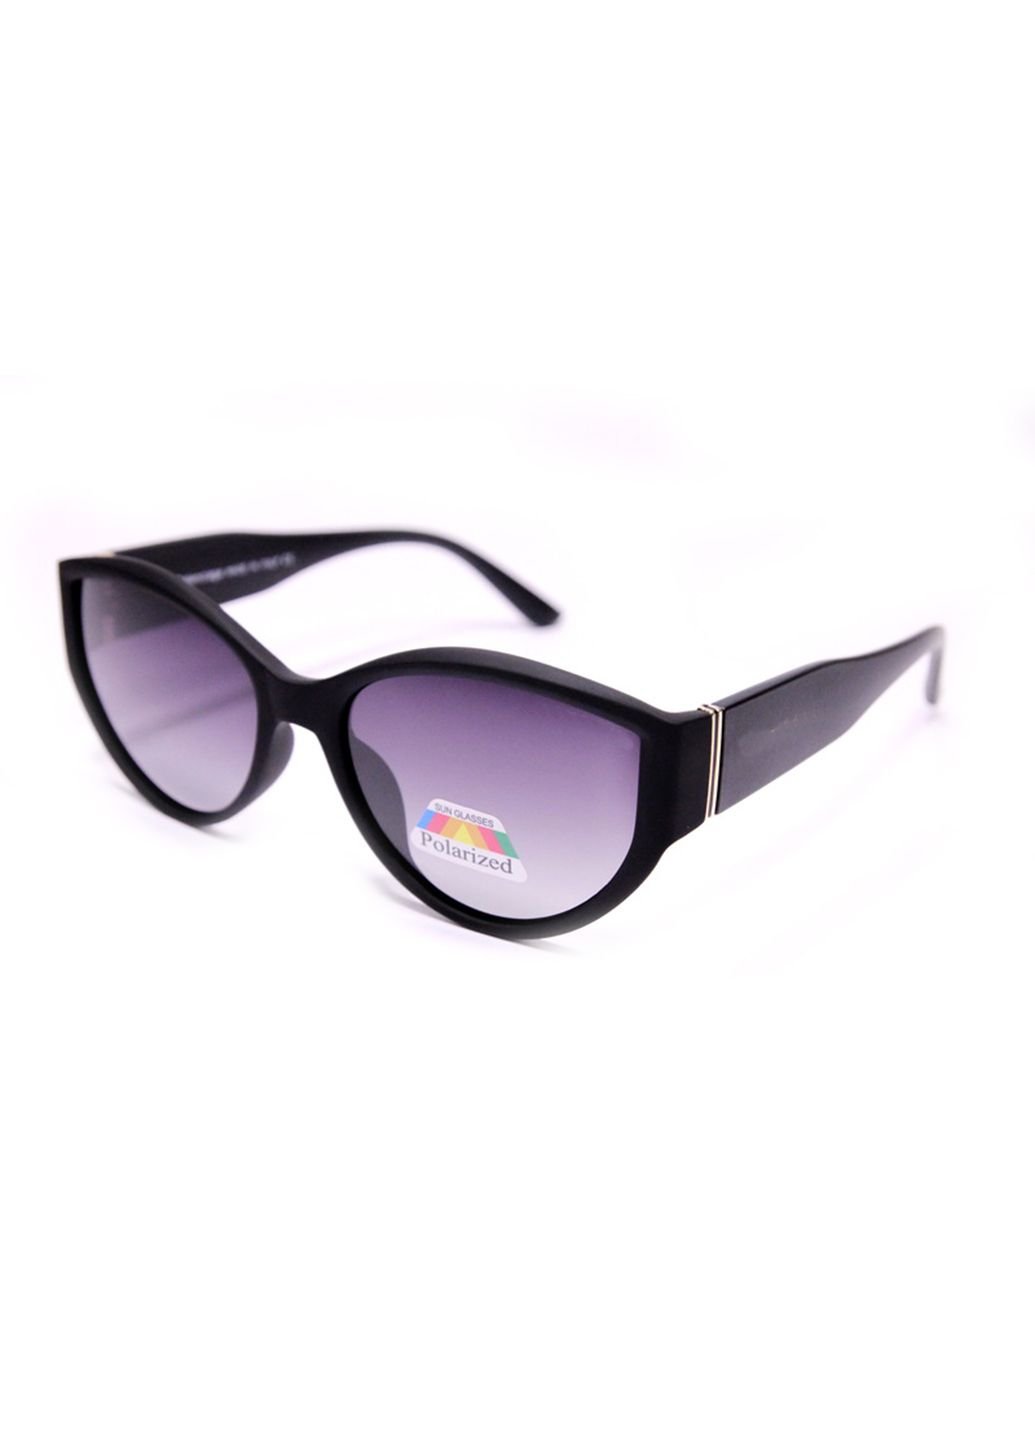 Купить Женские солнцезащитные очки Merlini BGP2125 100256 - Фиолетовый в интернет-магазине